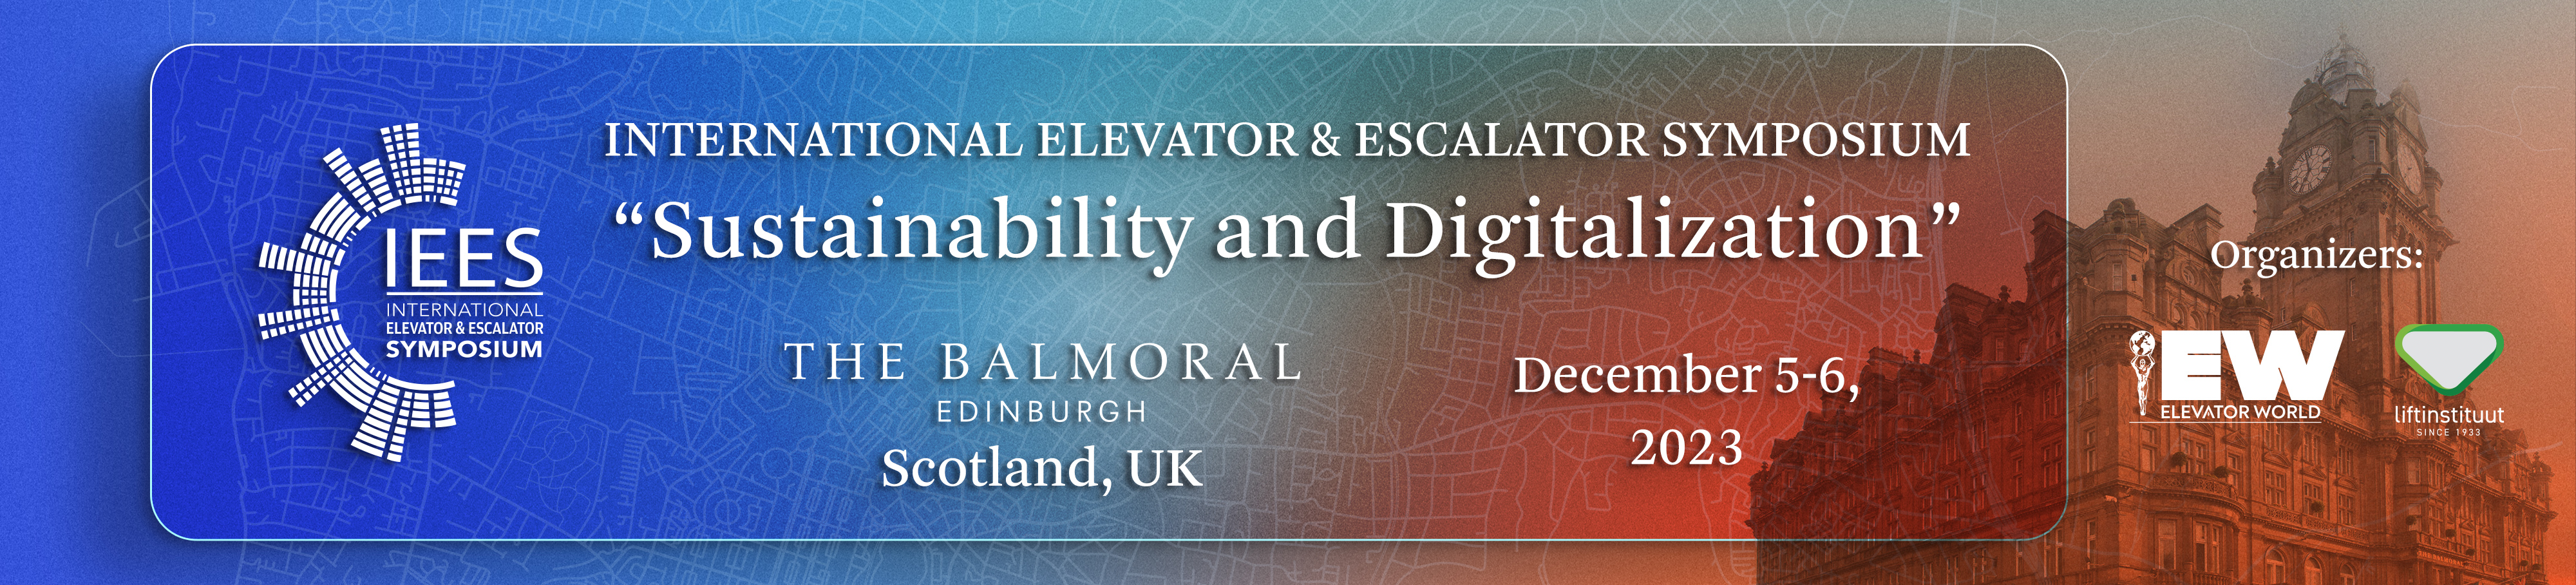 IEES International Elevator & Escalator Symposium 2023